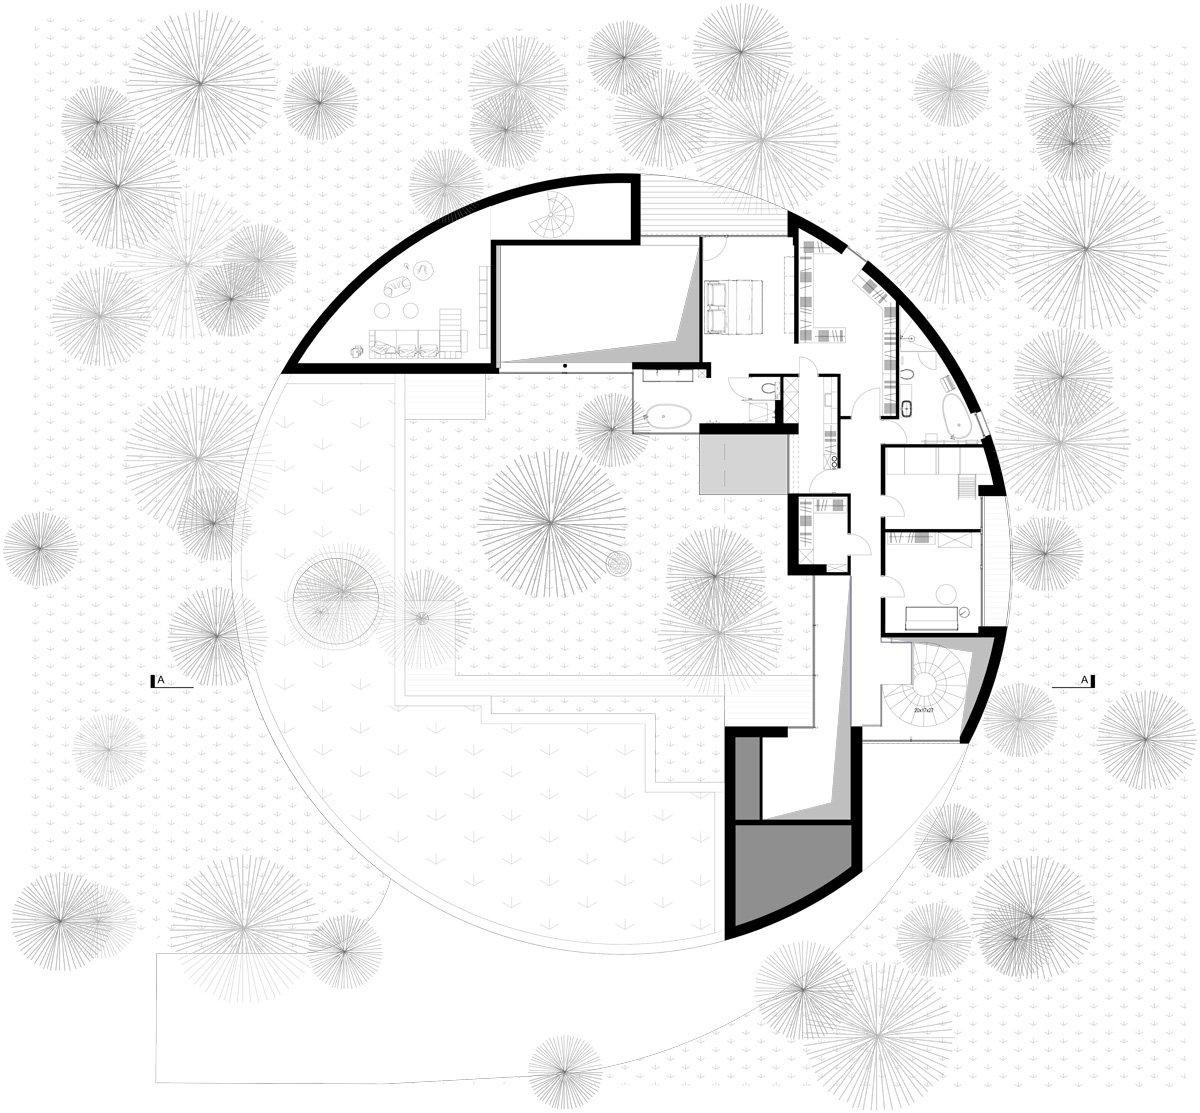 circle-wood-house-przemyslaw-olczyk-mobius-architekci-poland-designboom-h.jpg